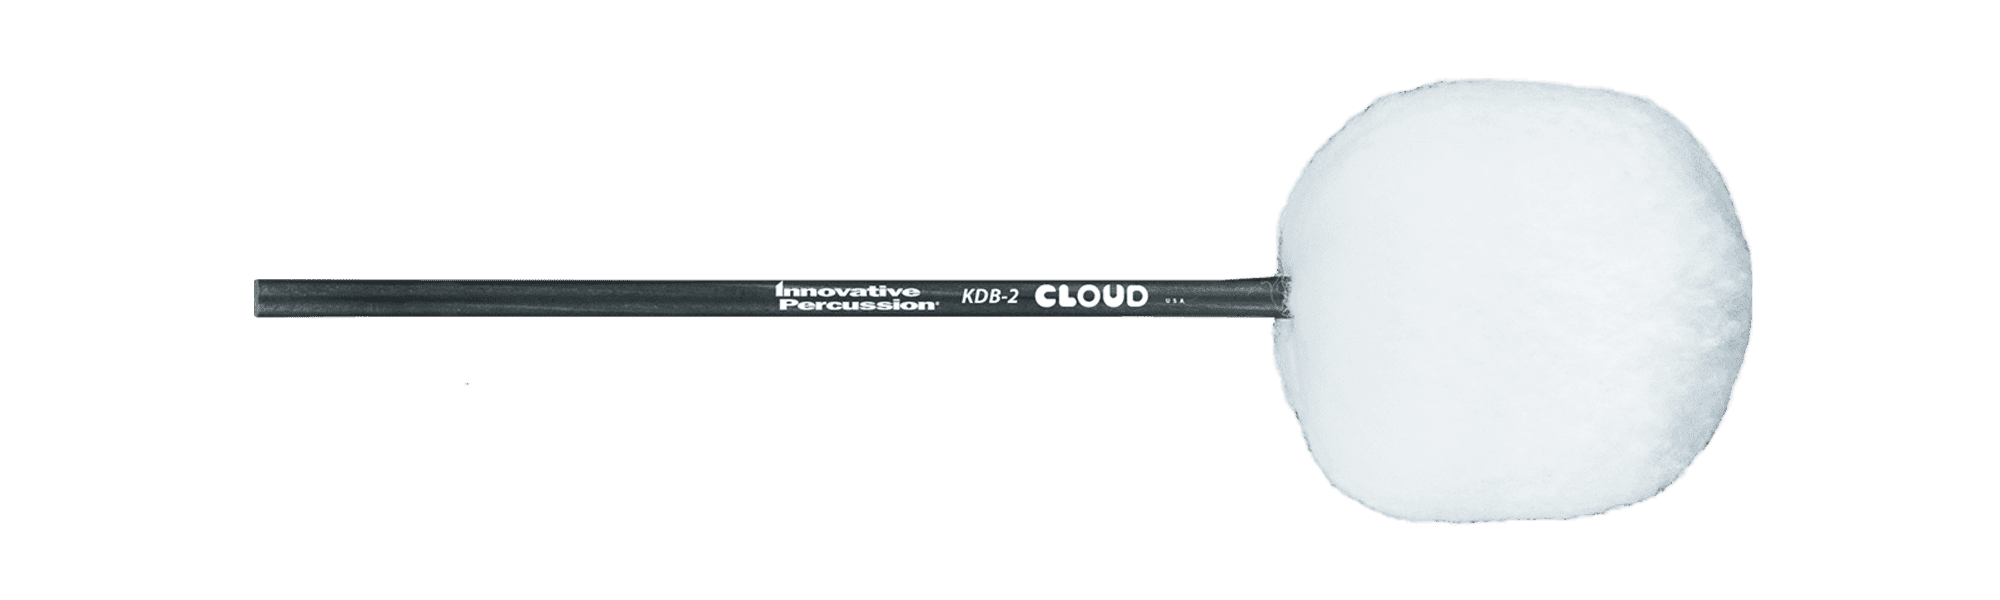 KDB-2〈cloud model〉